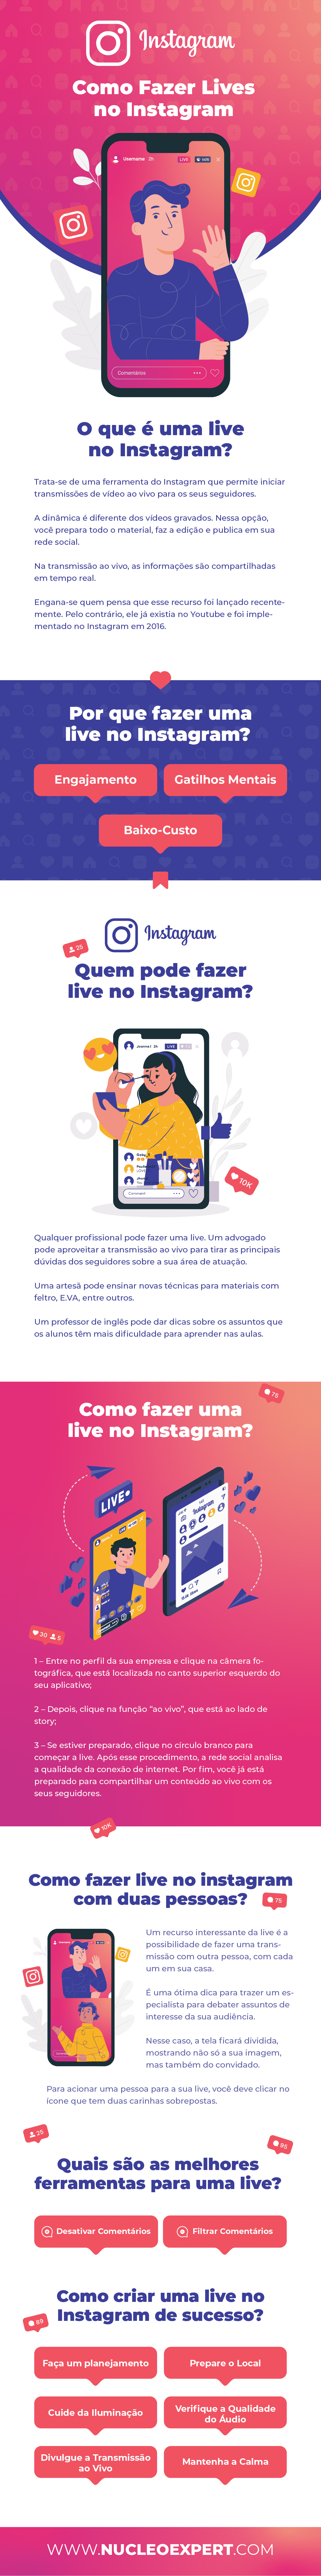 Infográfico | Como fazer Lives no Instagram